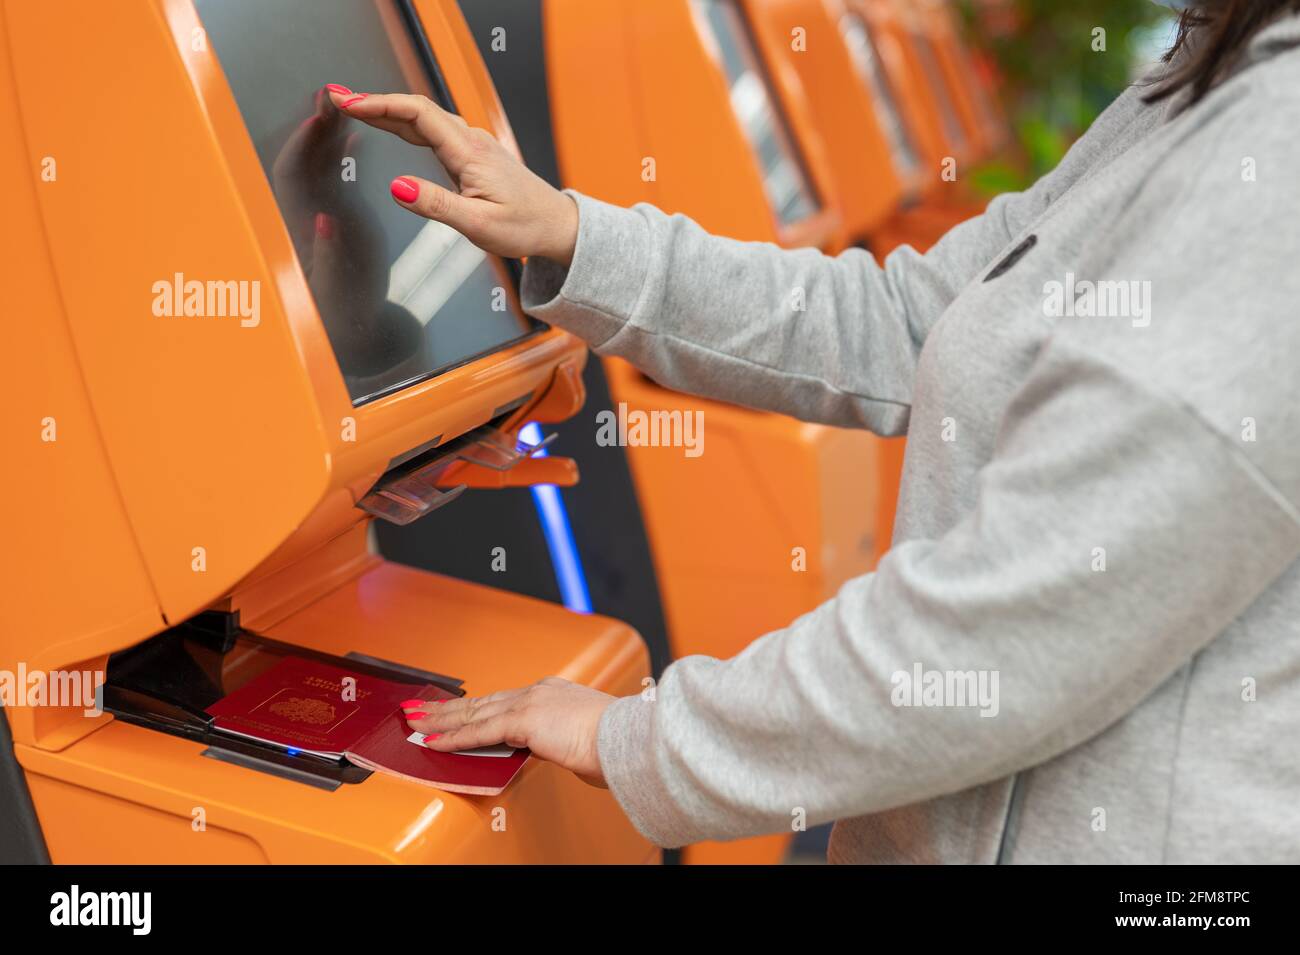 Reisende, die am Flughafen einen Automaten-Check-in-Automaten nutzen, Nahaufnahme auf dem Display, Anwendung zur Bestätigung der Buchungsdetails. Frau Stockfoto